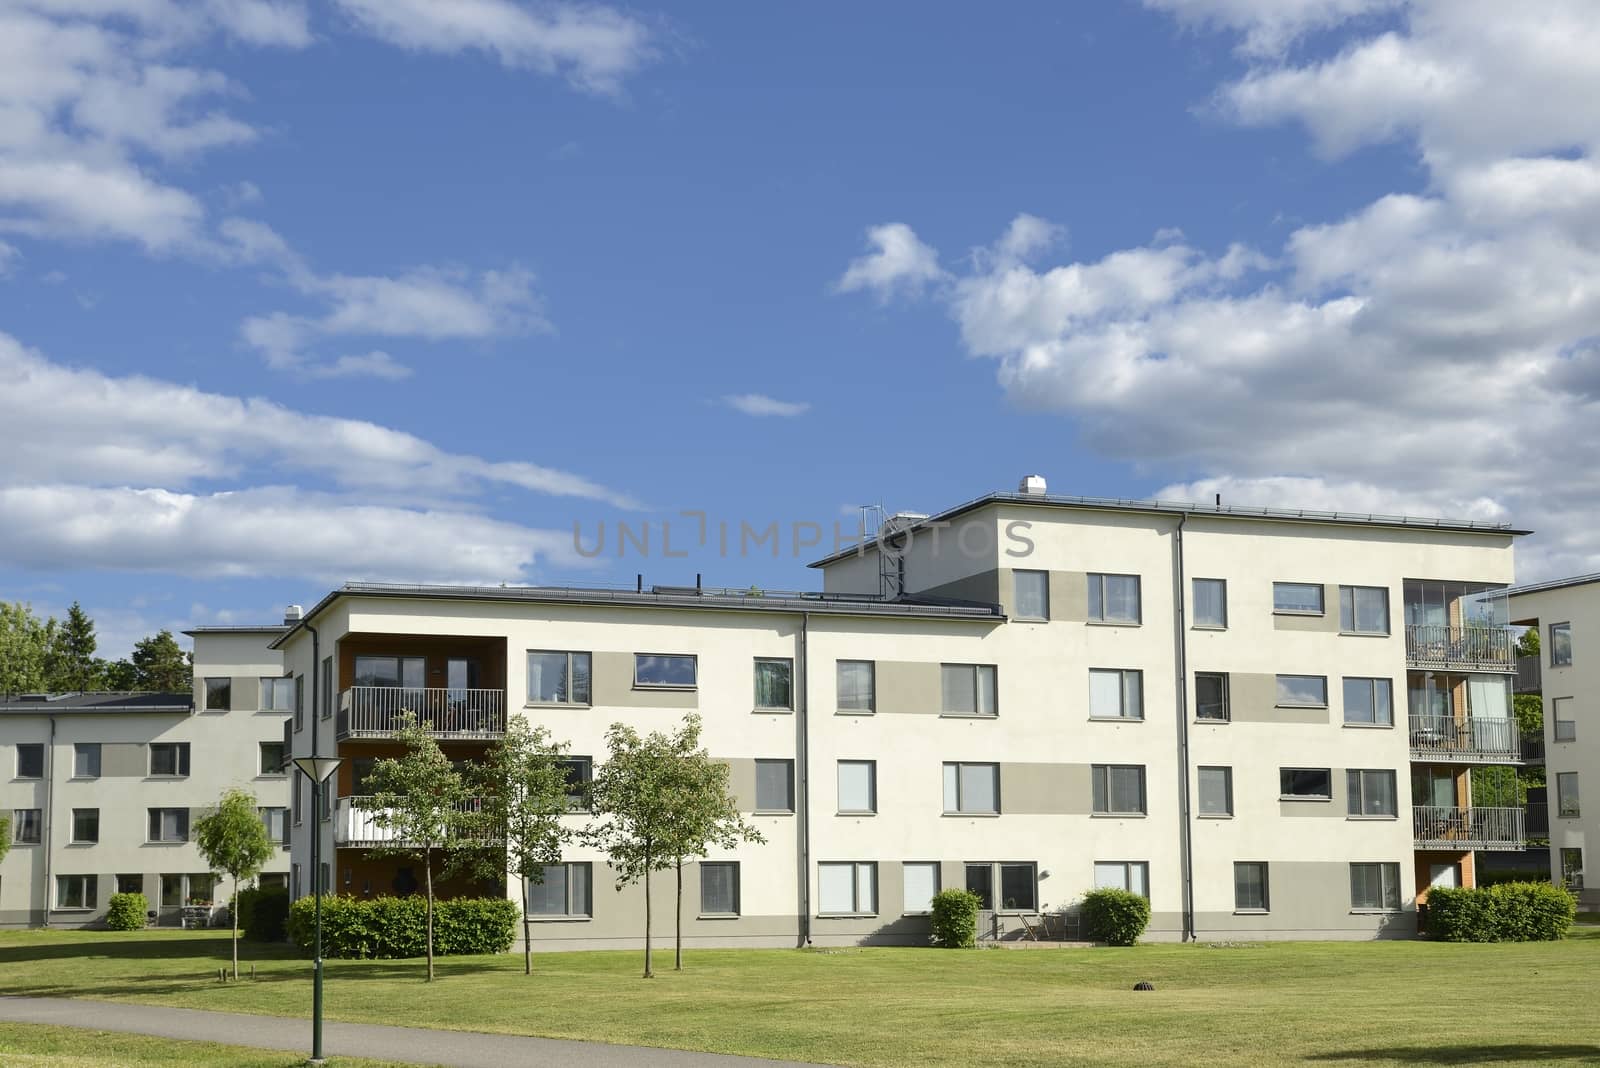 Swedish apartment Block in summer.